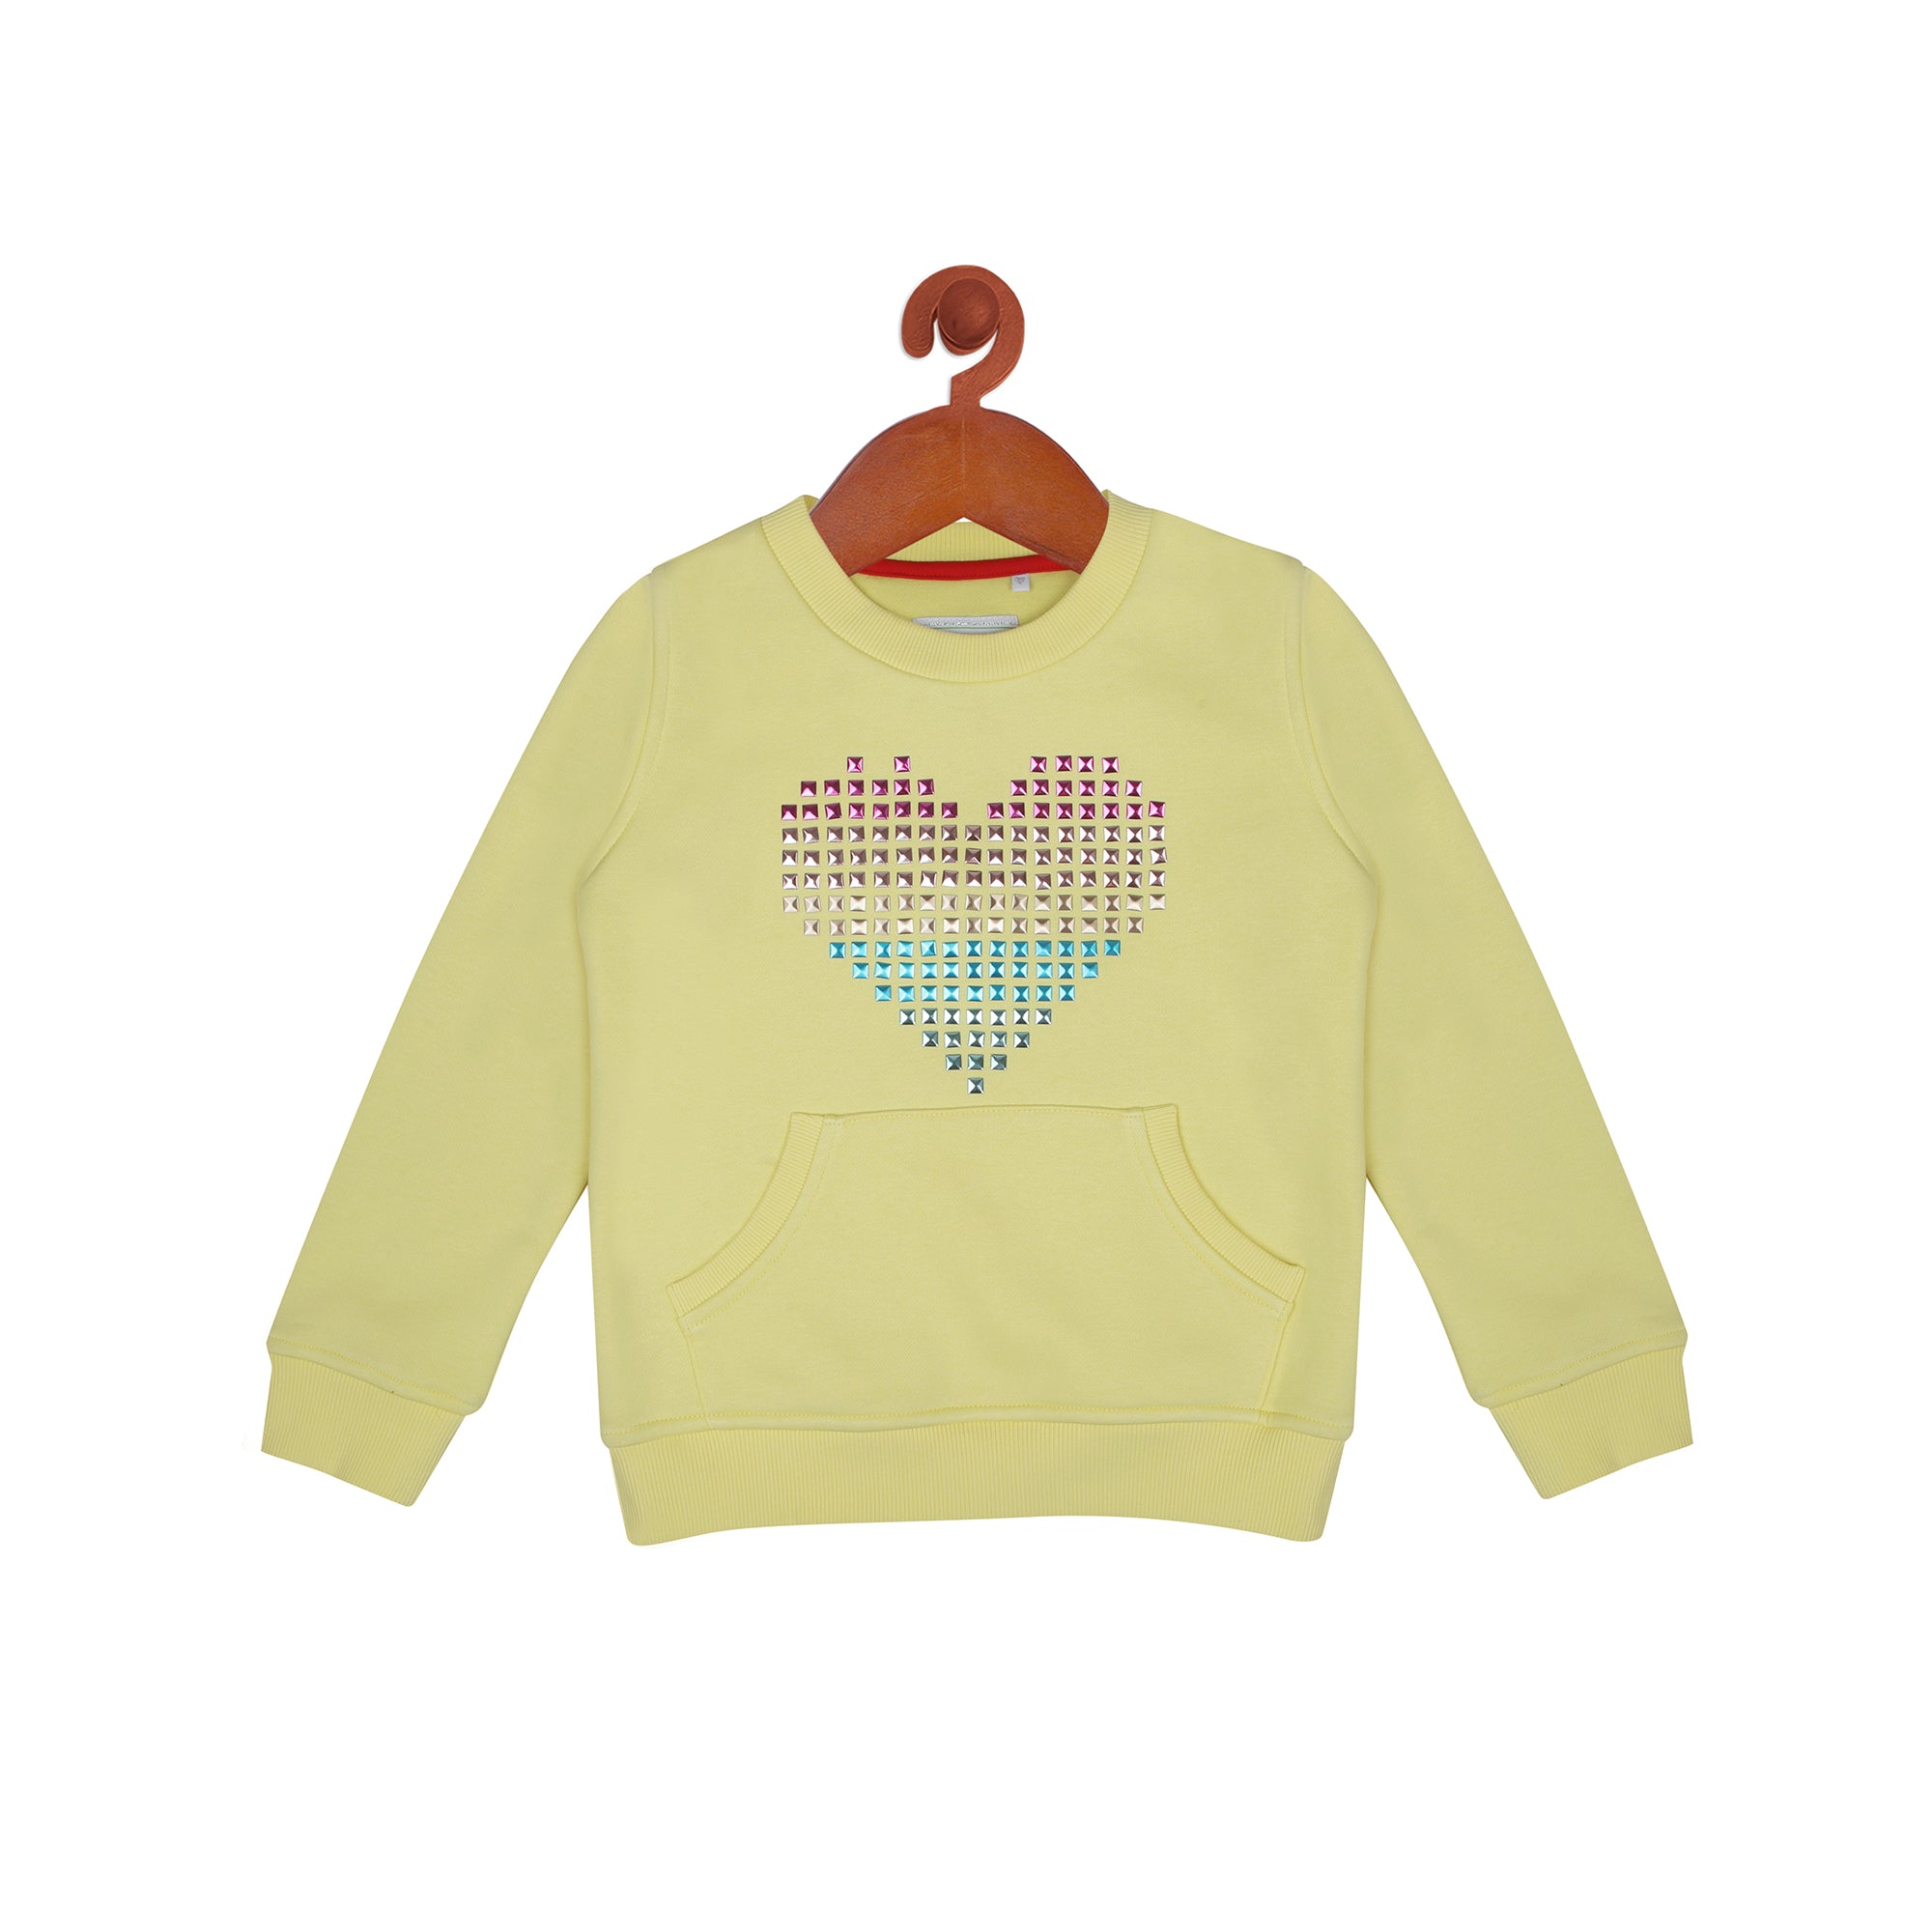 Embedded Heart Sweat Shirt In Lemon